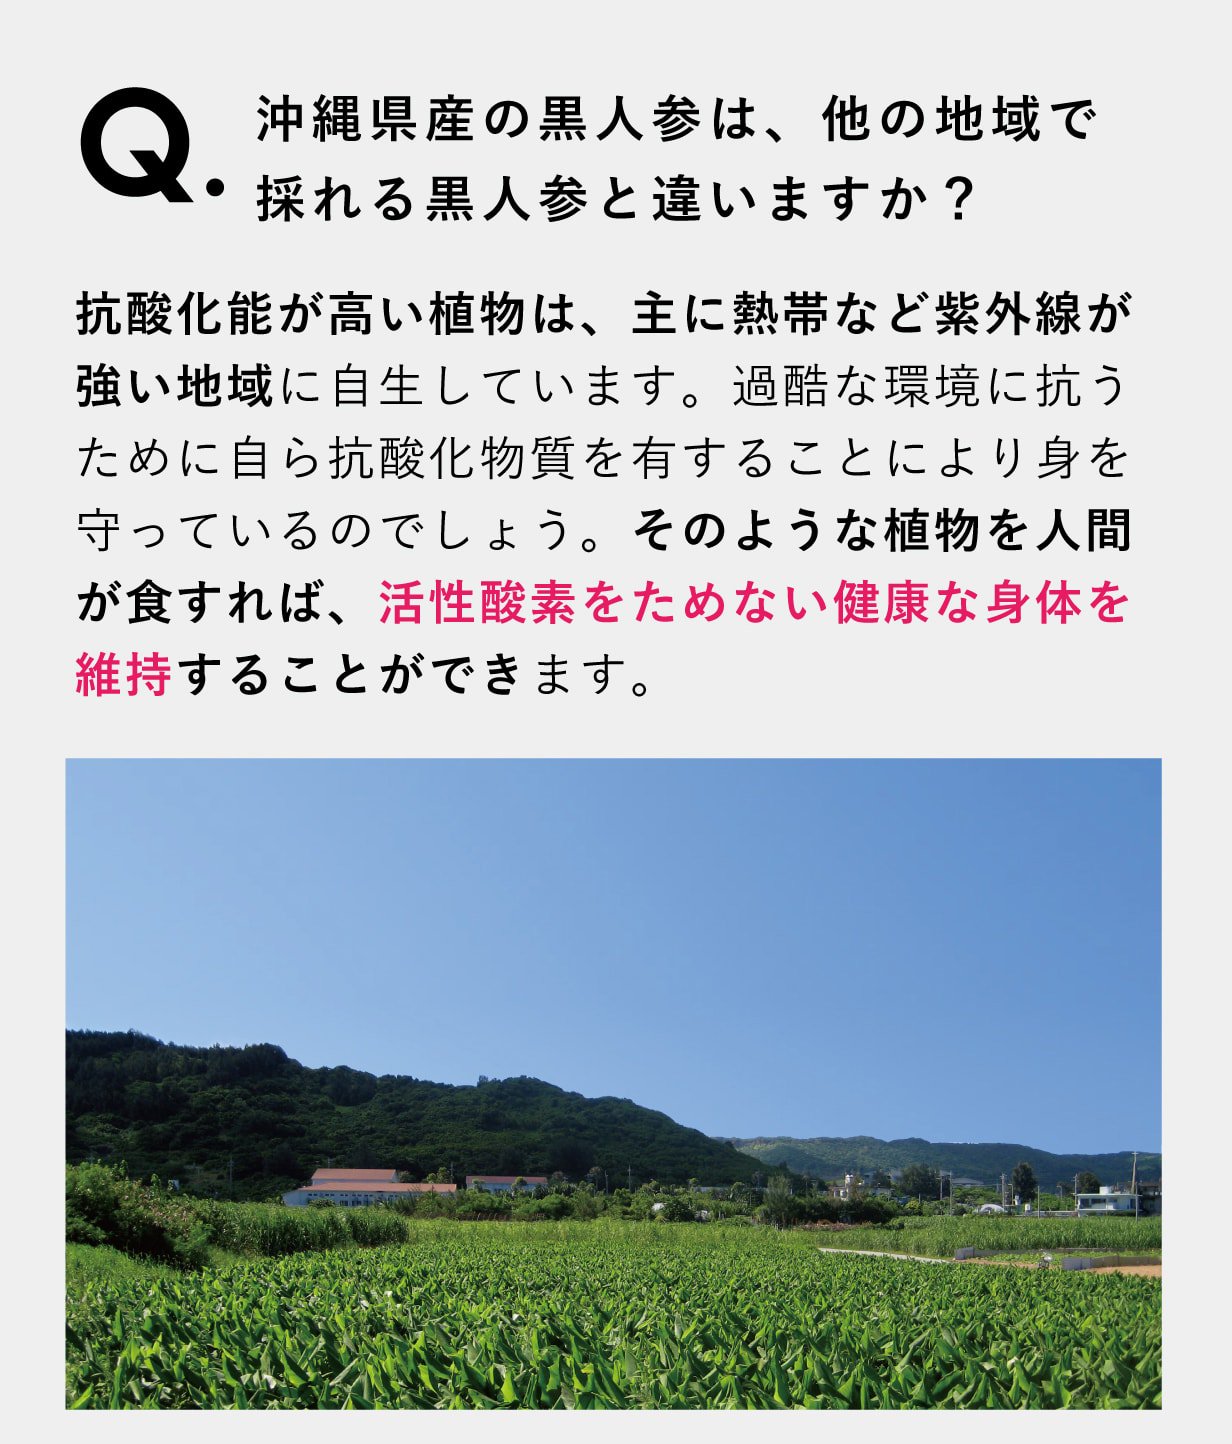 沖縄県産の黒人参は、 他の地域で採れる黒人参と違いますか？